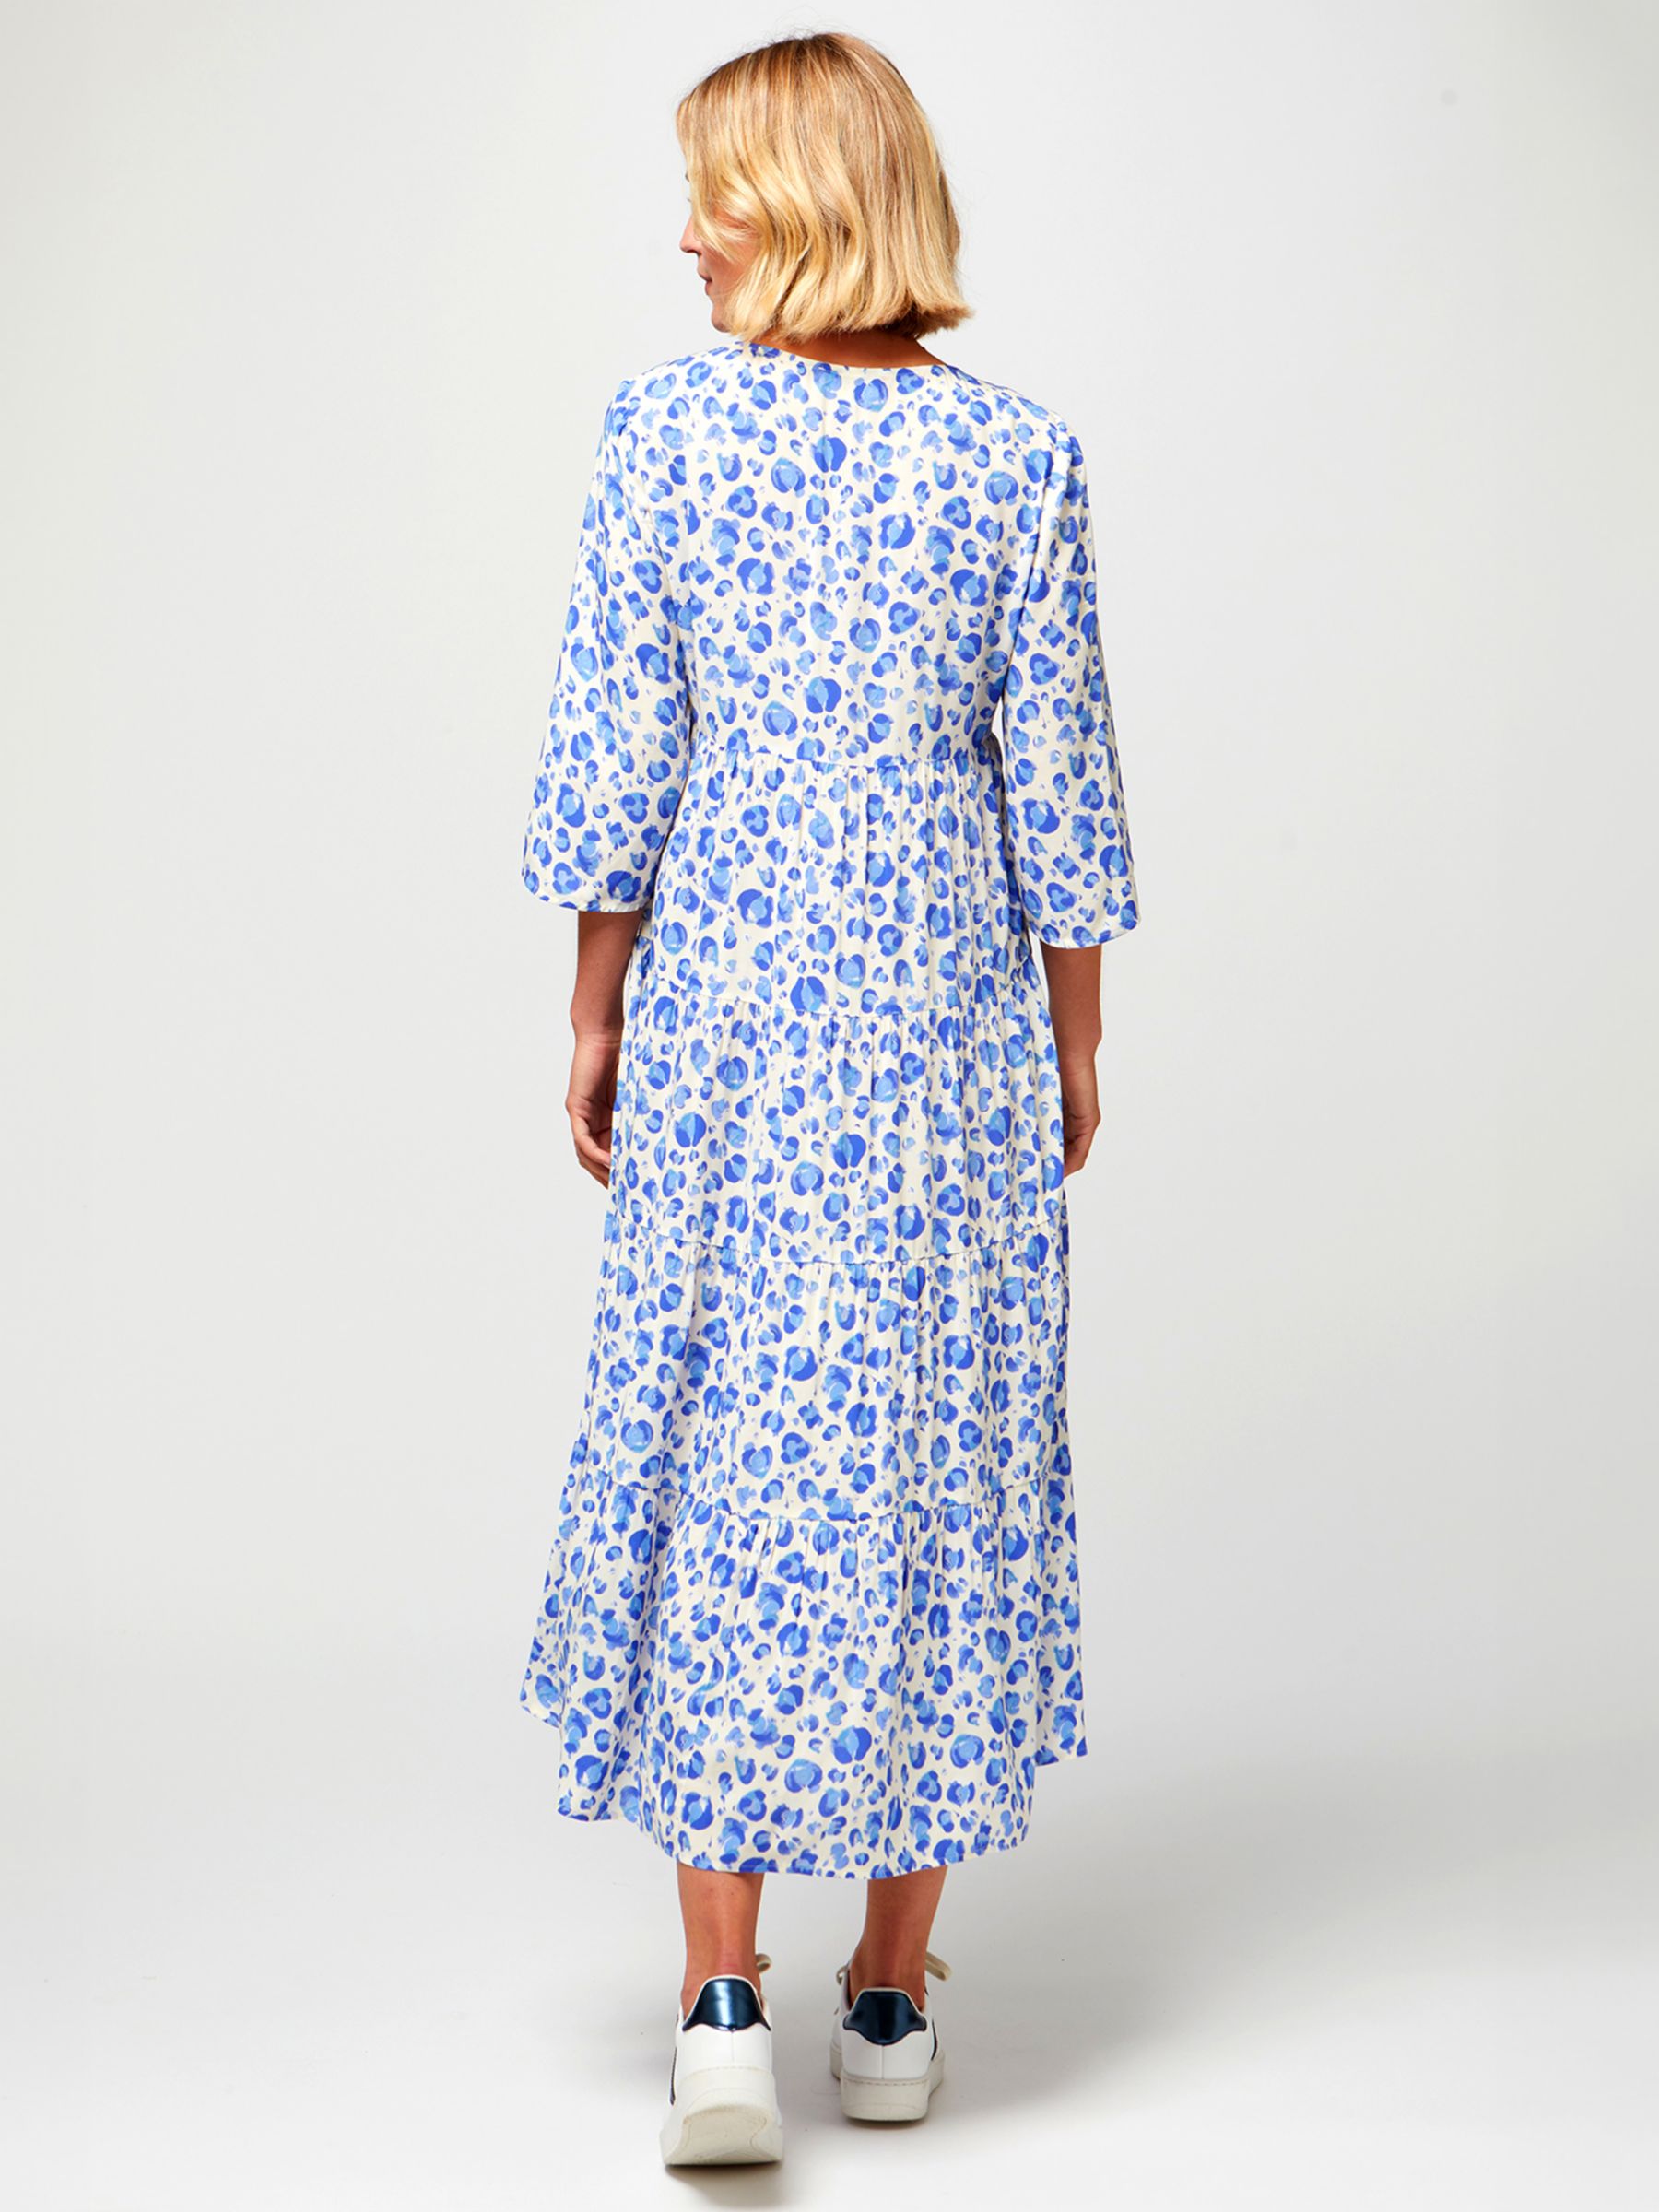 Aspiga Emma Cheetah Print Midi Dress, Cream/Blue, XXL